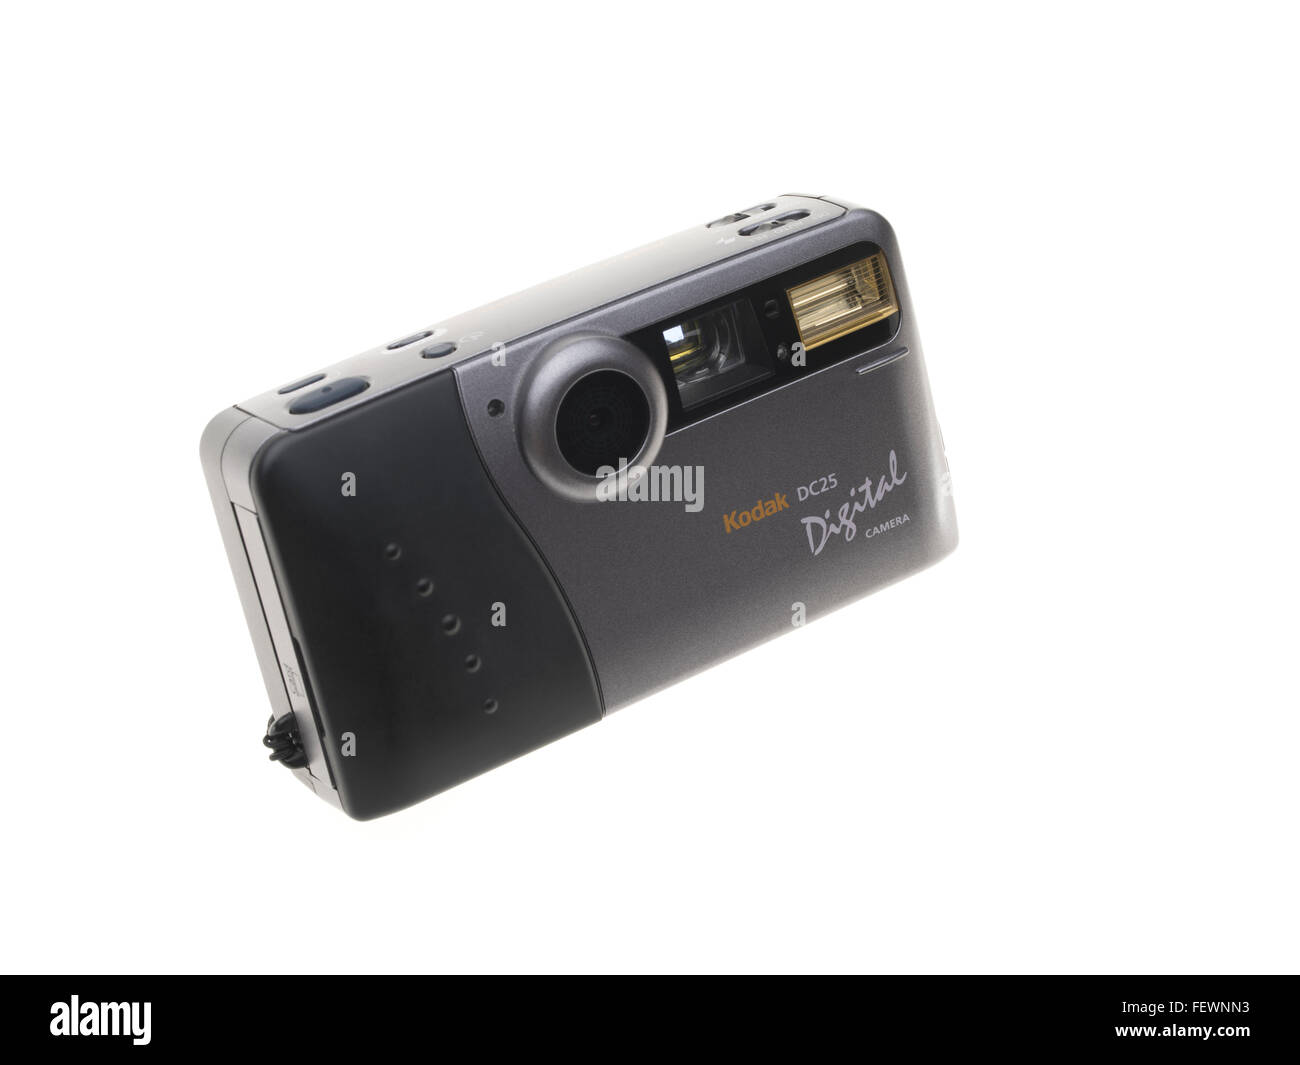 Appareil photo numérique Kodak DC25 l'un des premiers consommateurs de masse de l'appareil photo numérique, sorti en 1996 0,2 mégapixels Banque D'Images